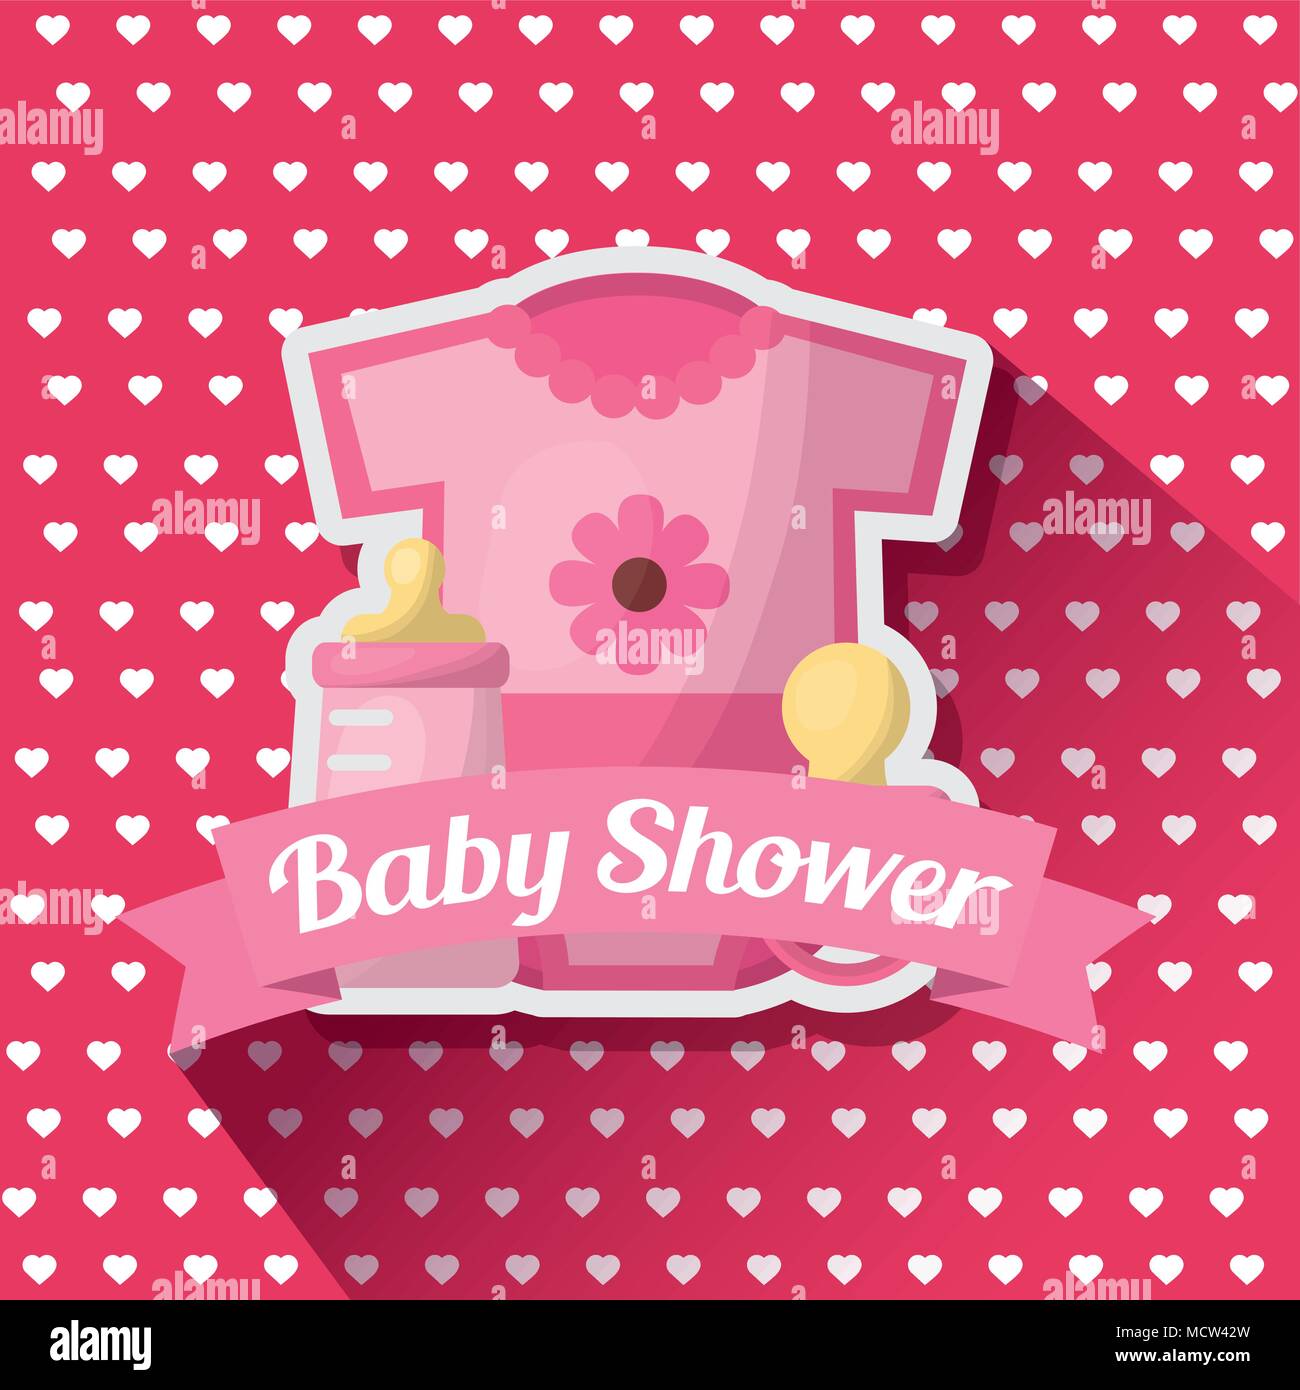 Métricas de la tarjeta de aniversario de 10 diez meses para bebés.  impresión de baby shower